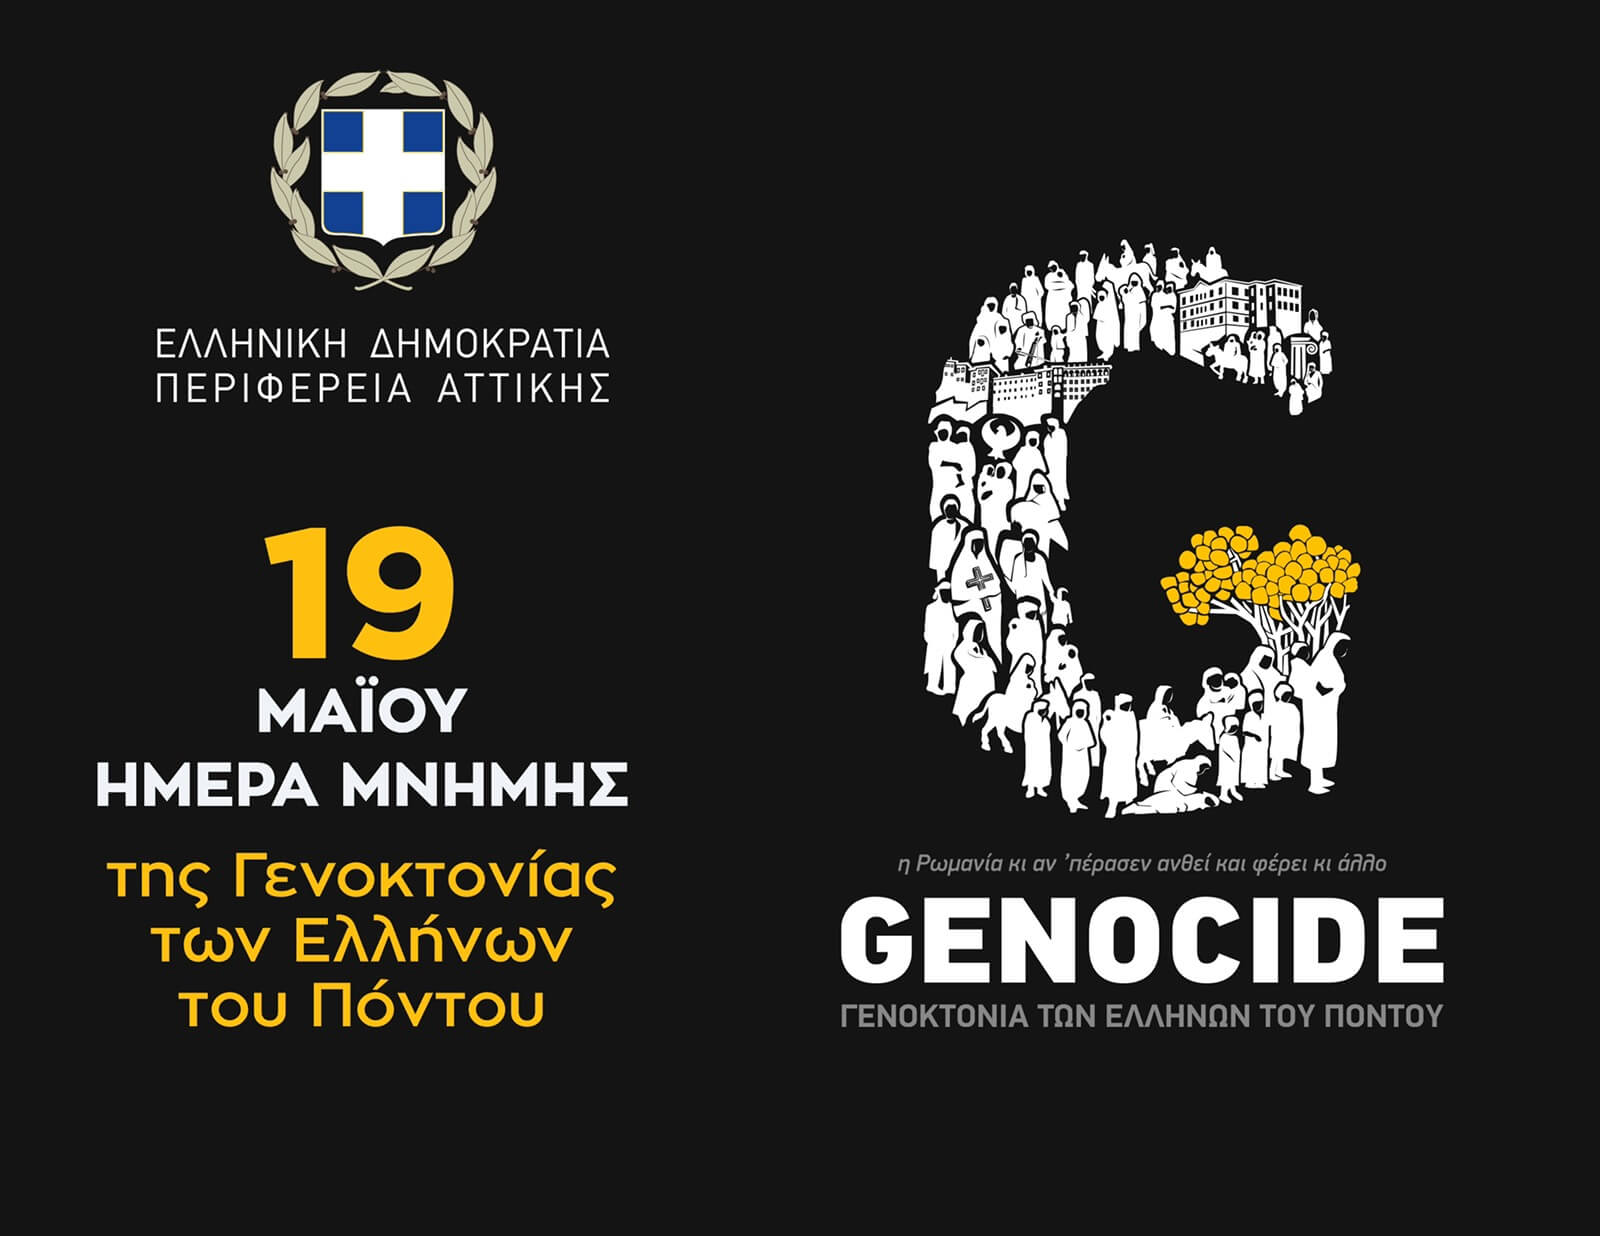 Γιώργος Πατούλης  για την Ημέρα μνήμης της Γενοκοτονίας των Ποντίων : Καθήκον μας να μην ξεχάσουμε ποτέ την ιστορία μας